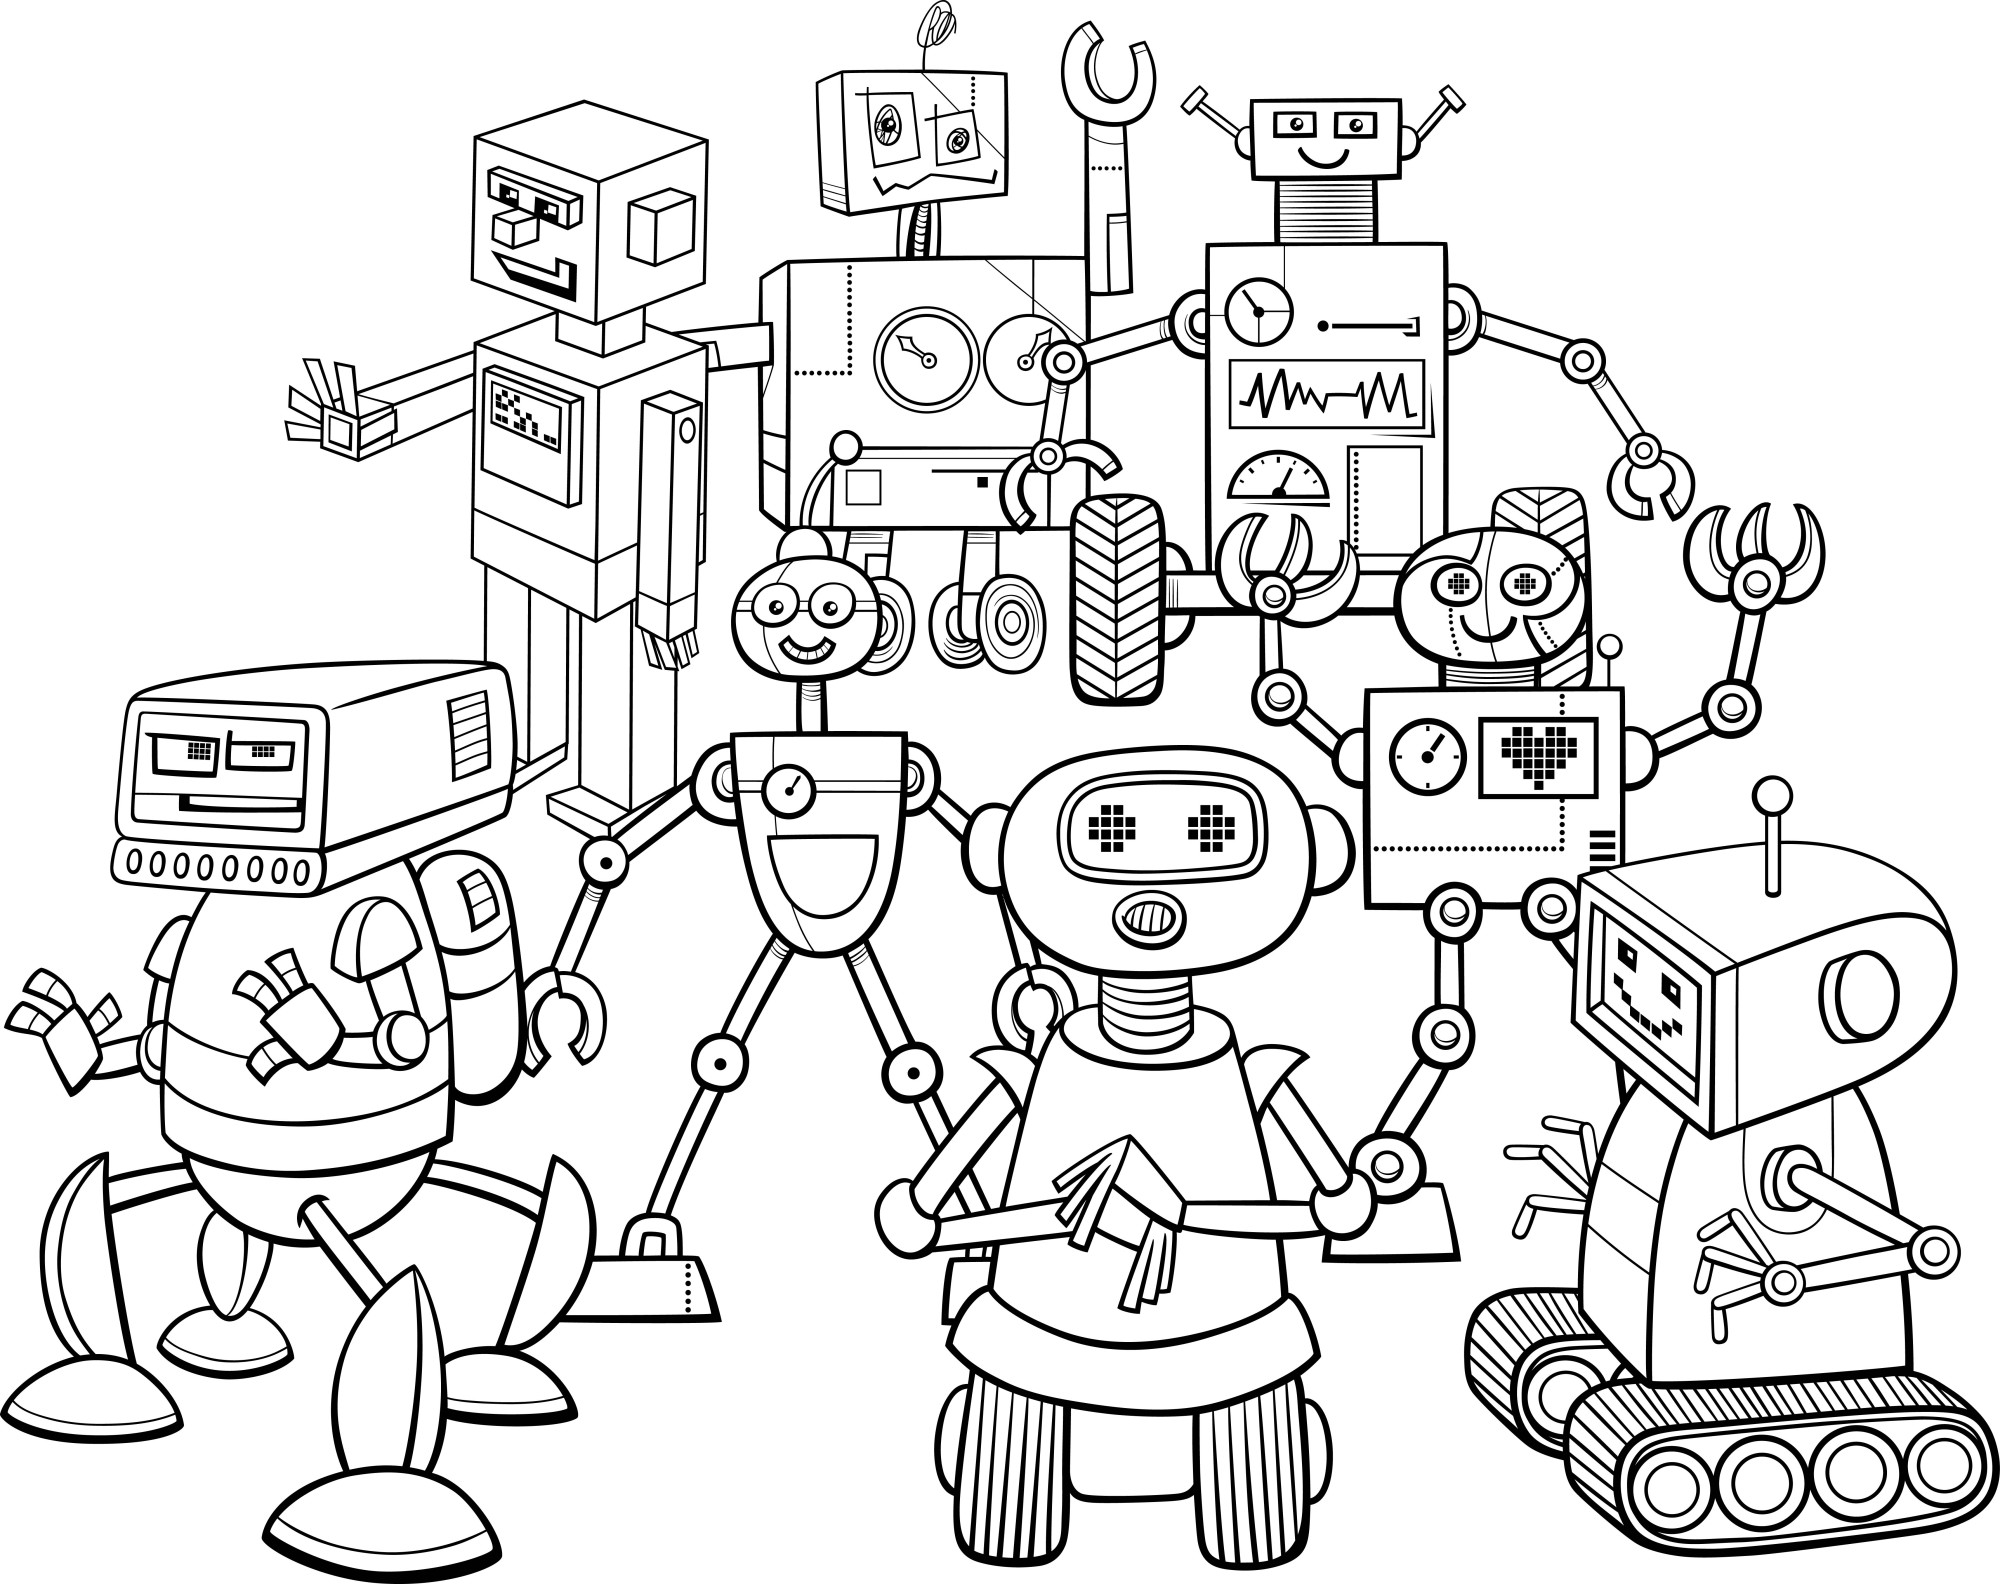 Раскраска для детей: карикатура забавных роботов